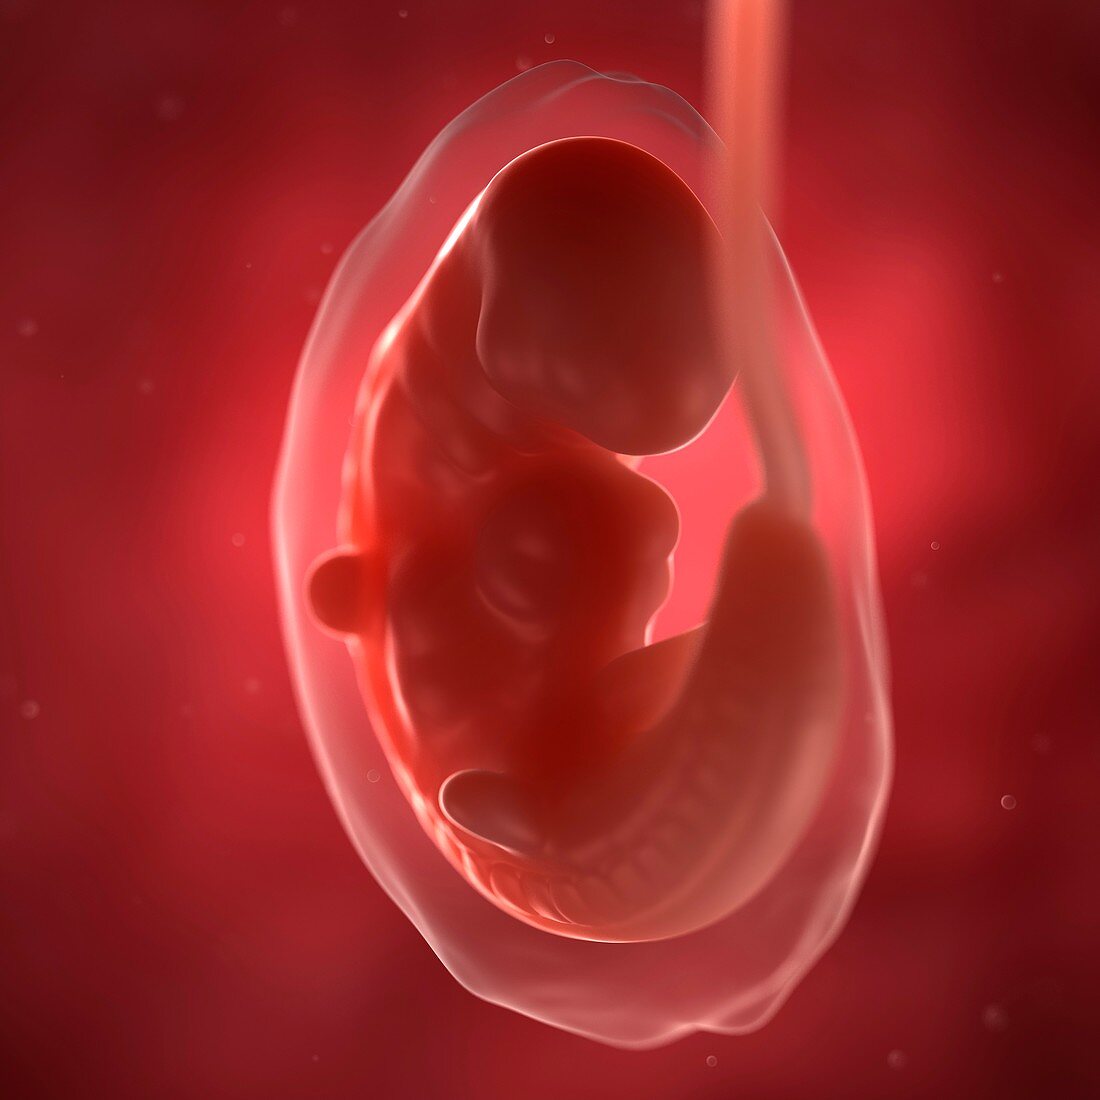 Foetus at 6 weeks,artwork